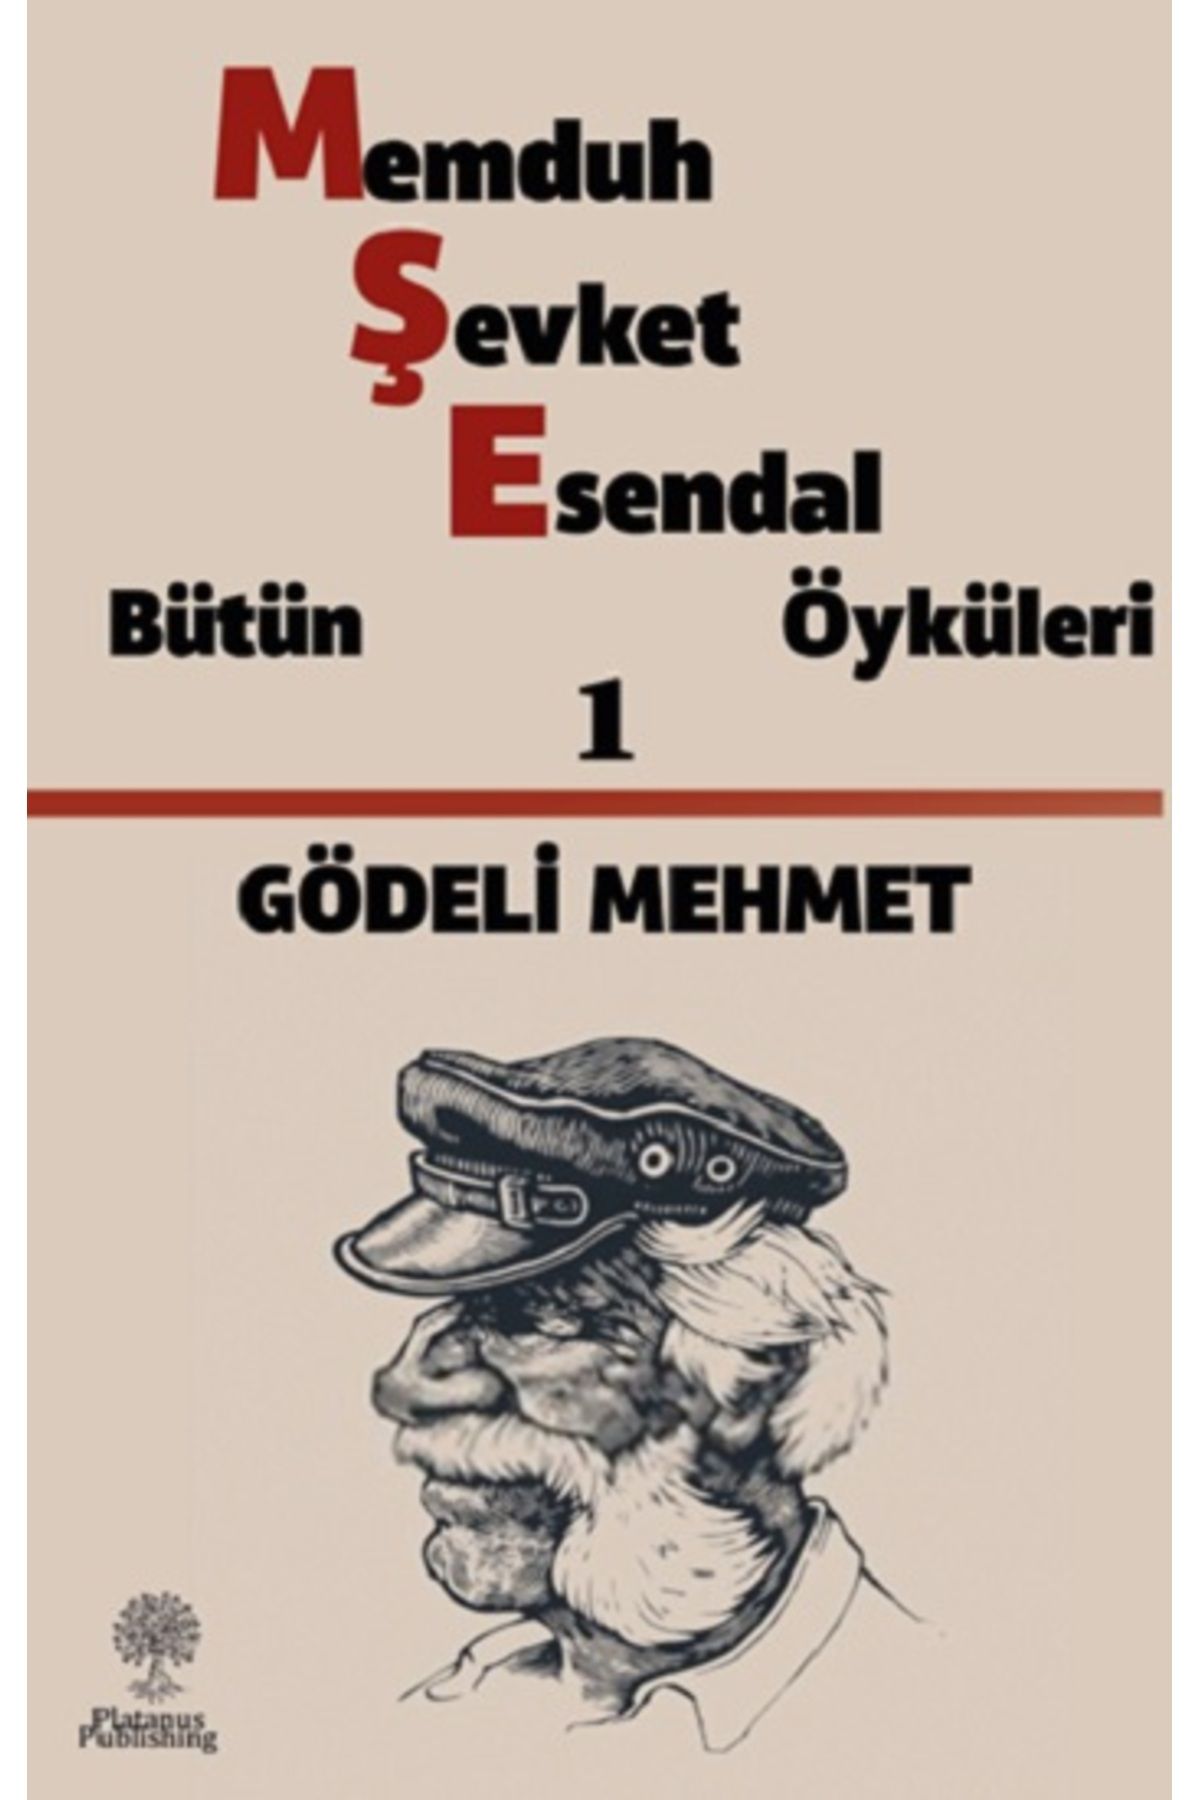 Platanus Publishing Gödeli Mehmet